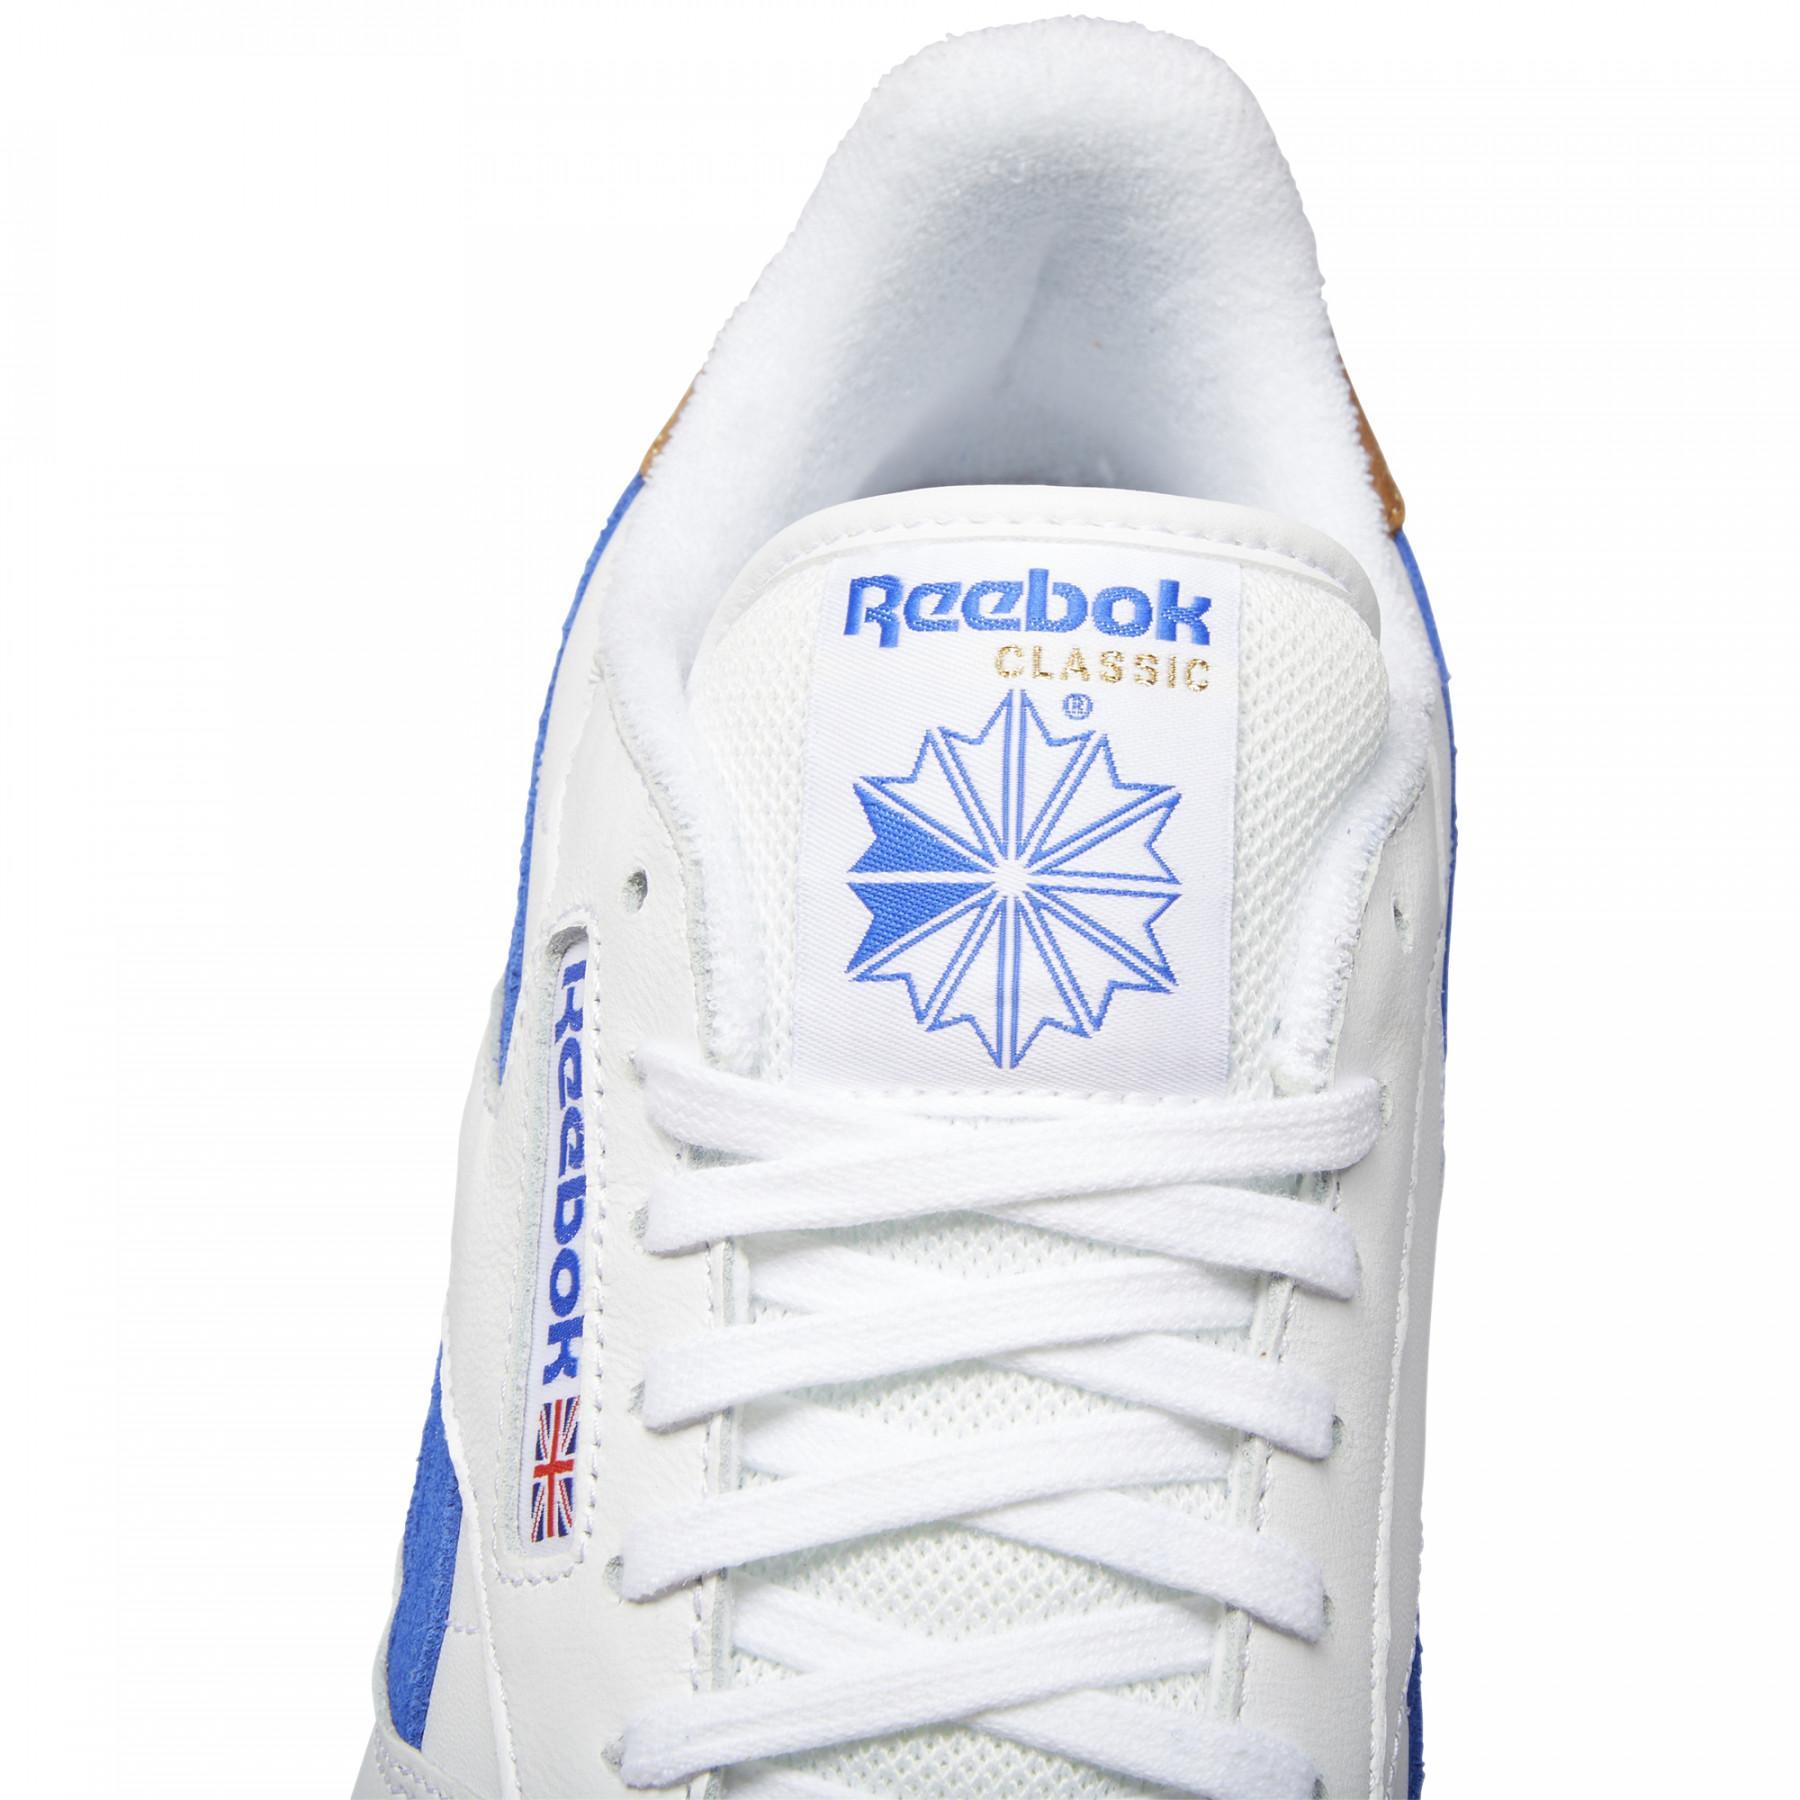 Sapatos Reebok Classics Leather